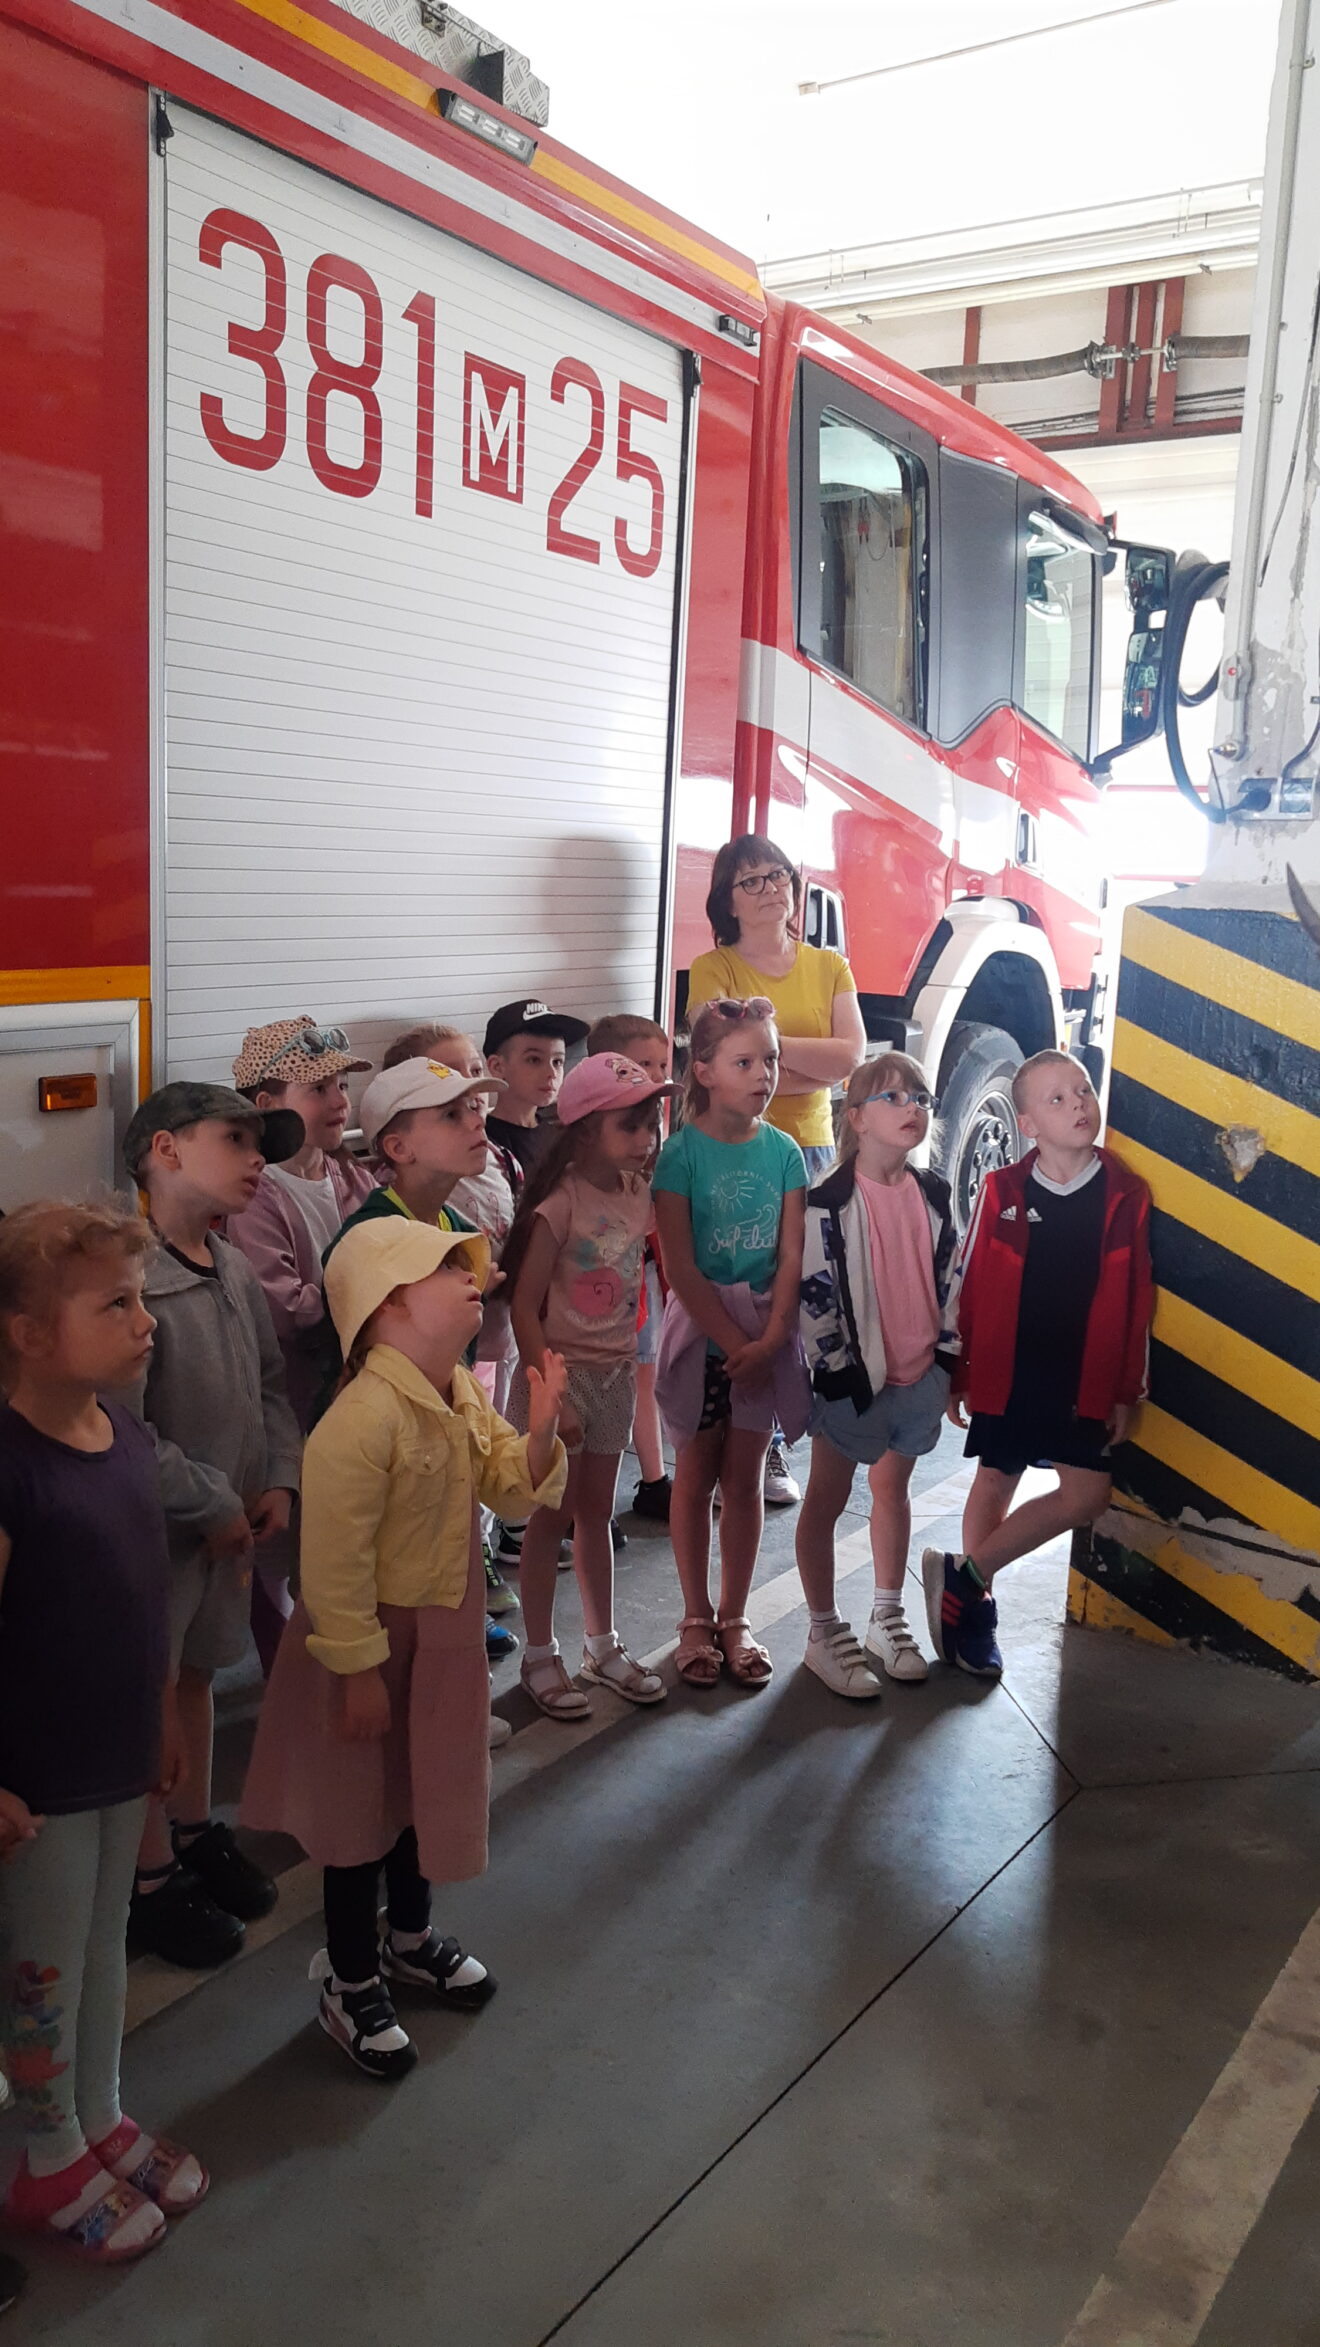 Dzieci oglądają wozy strażackie